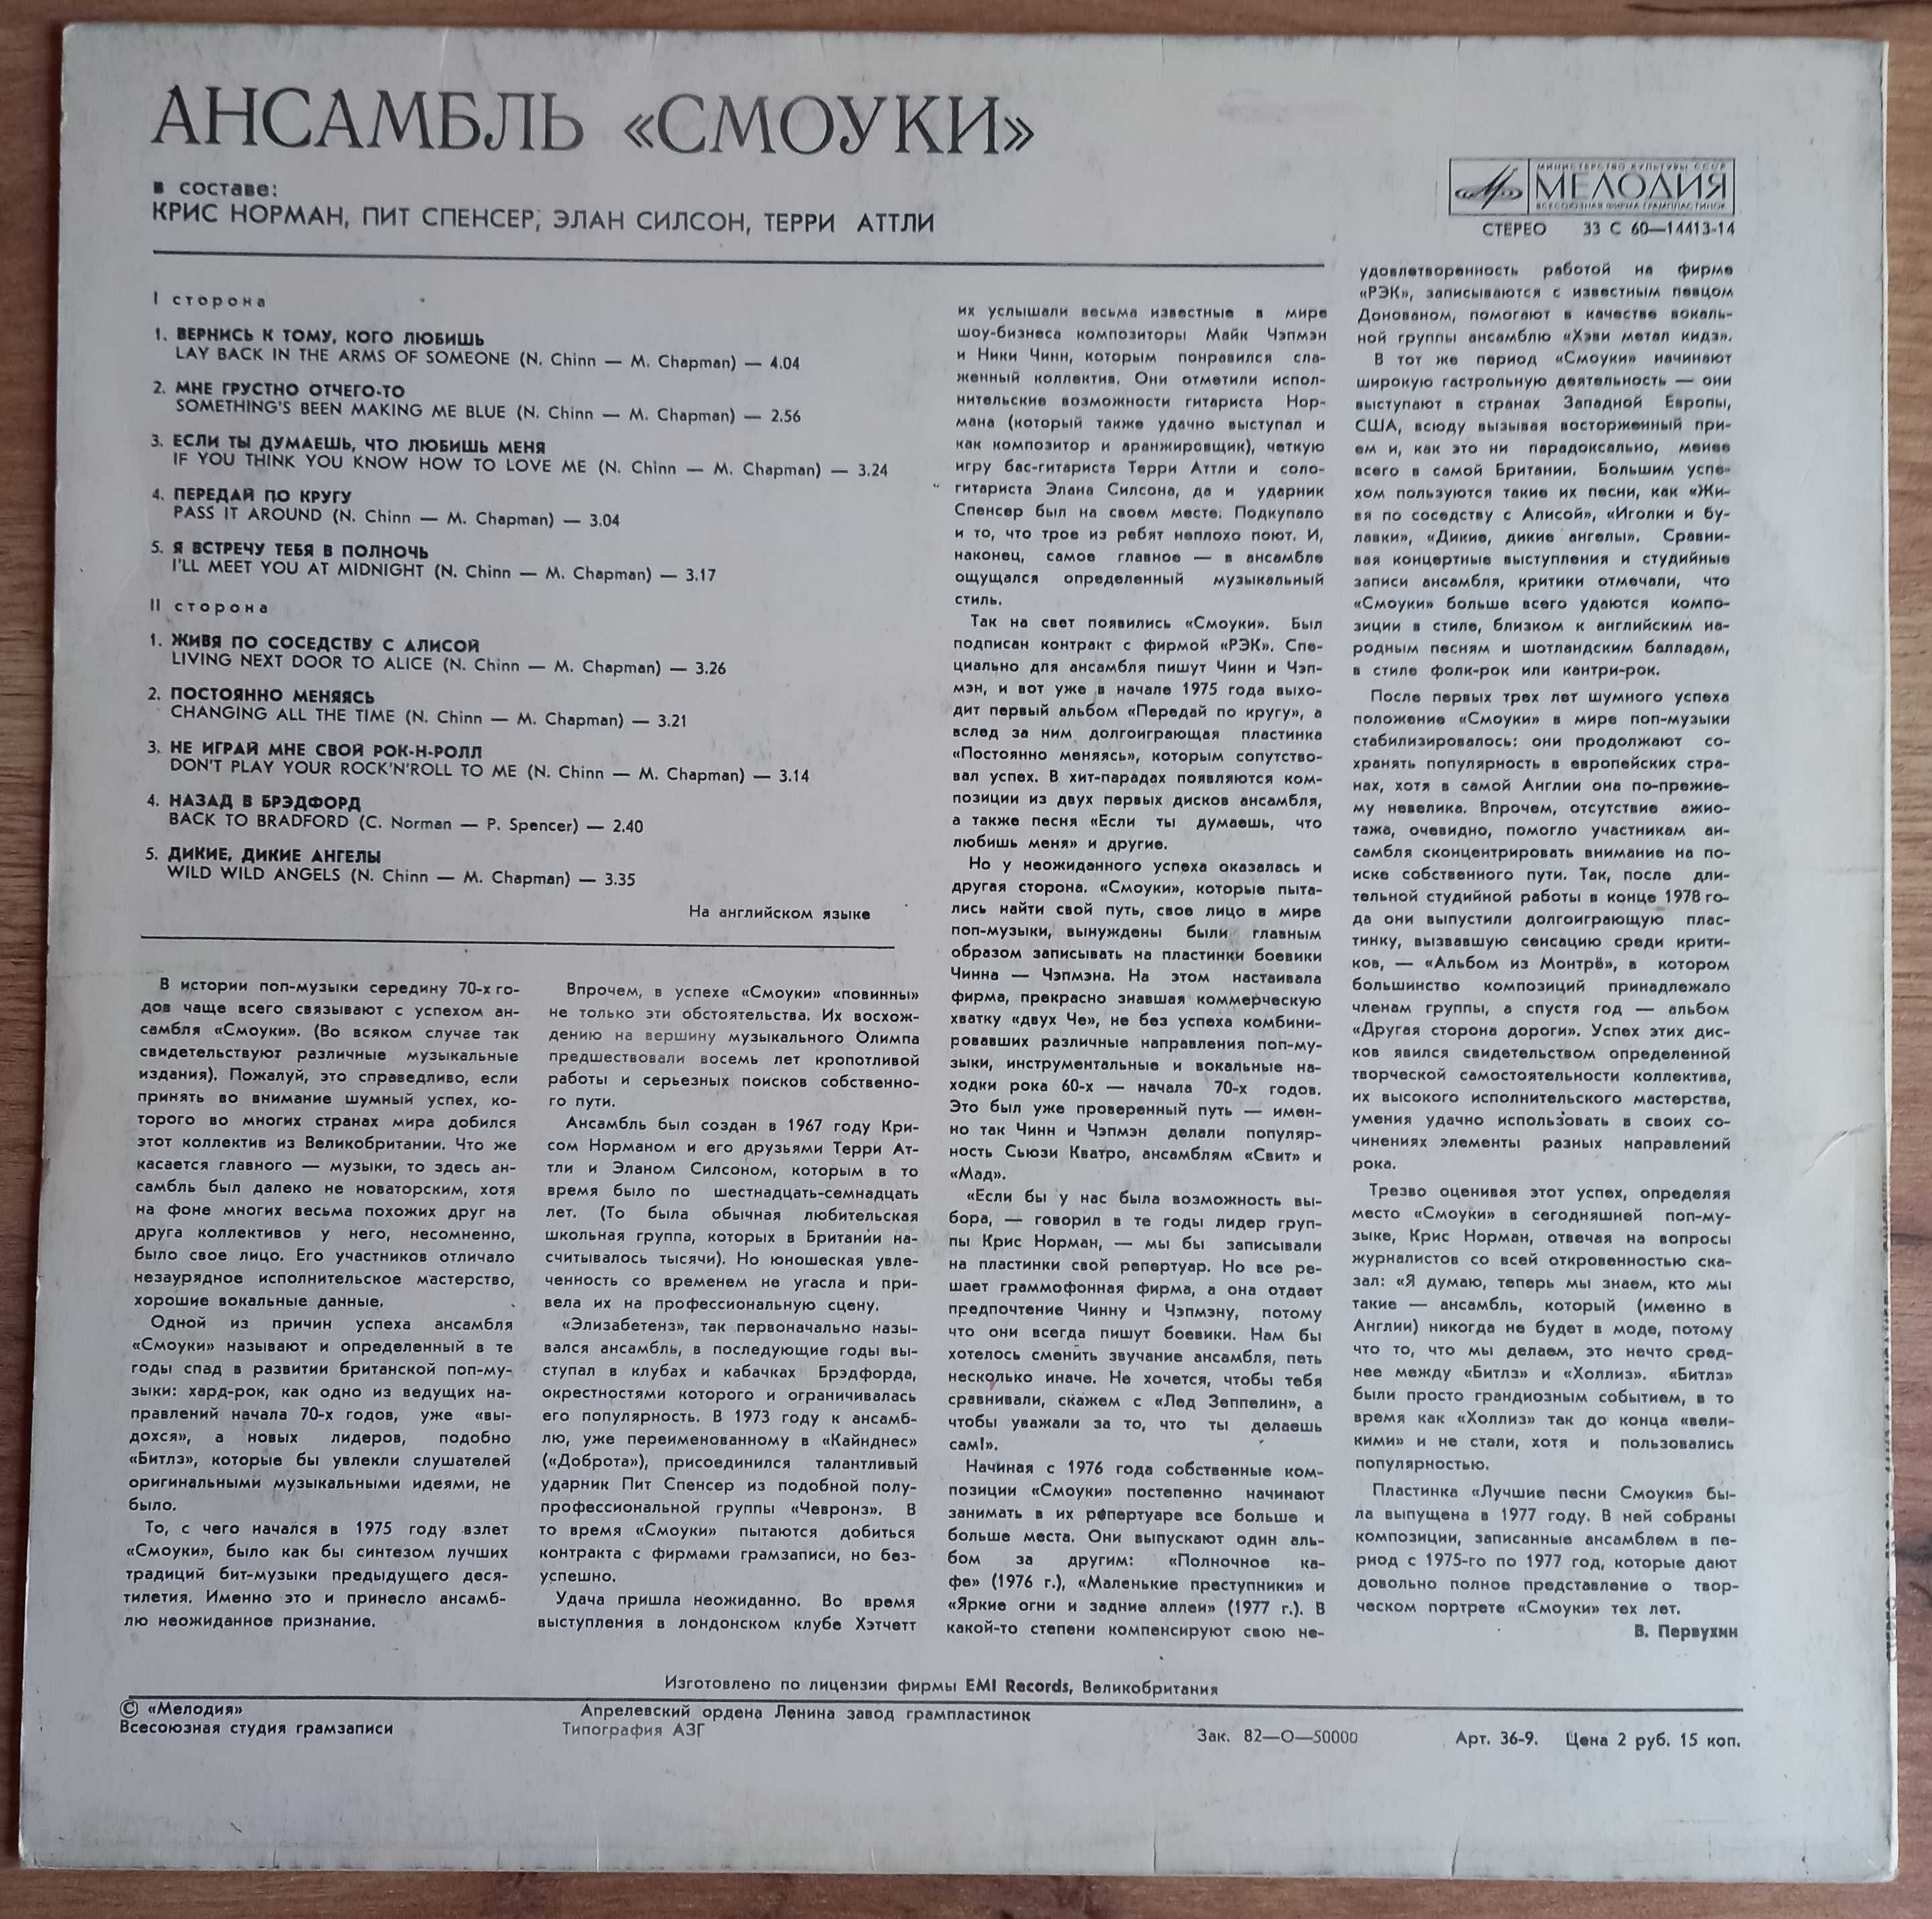 LP Ансамбль "Смоуки" - "Лучшие песни", ф-ма "Мелодия, 1980 год